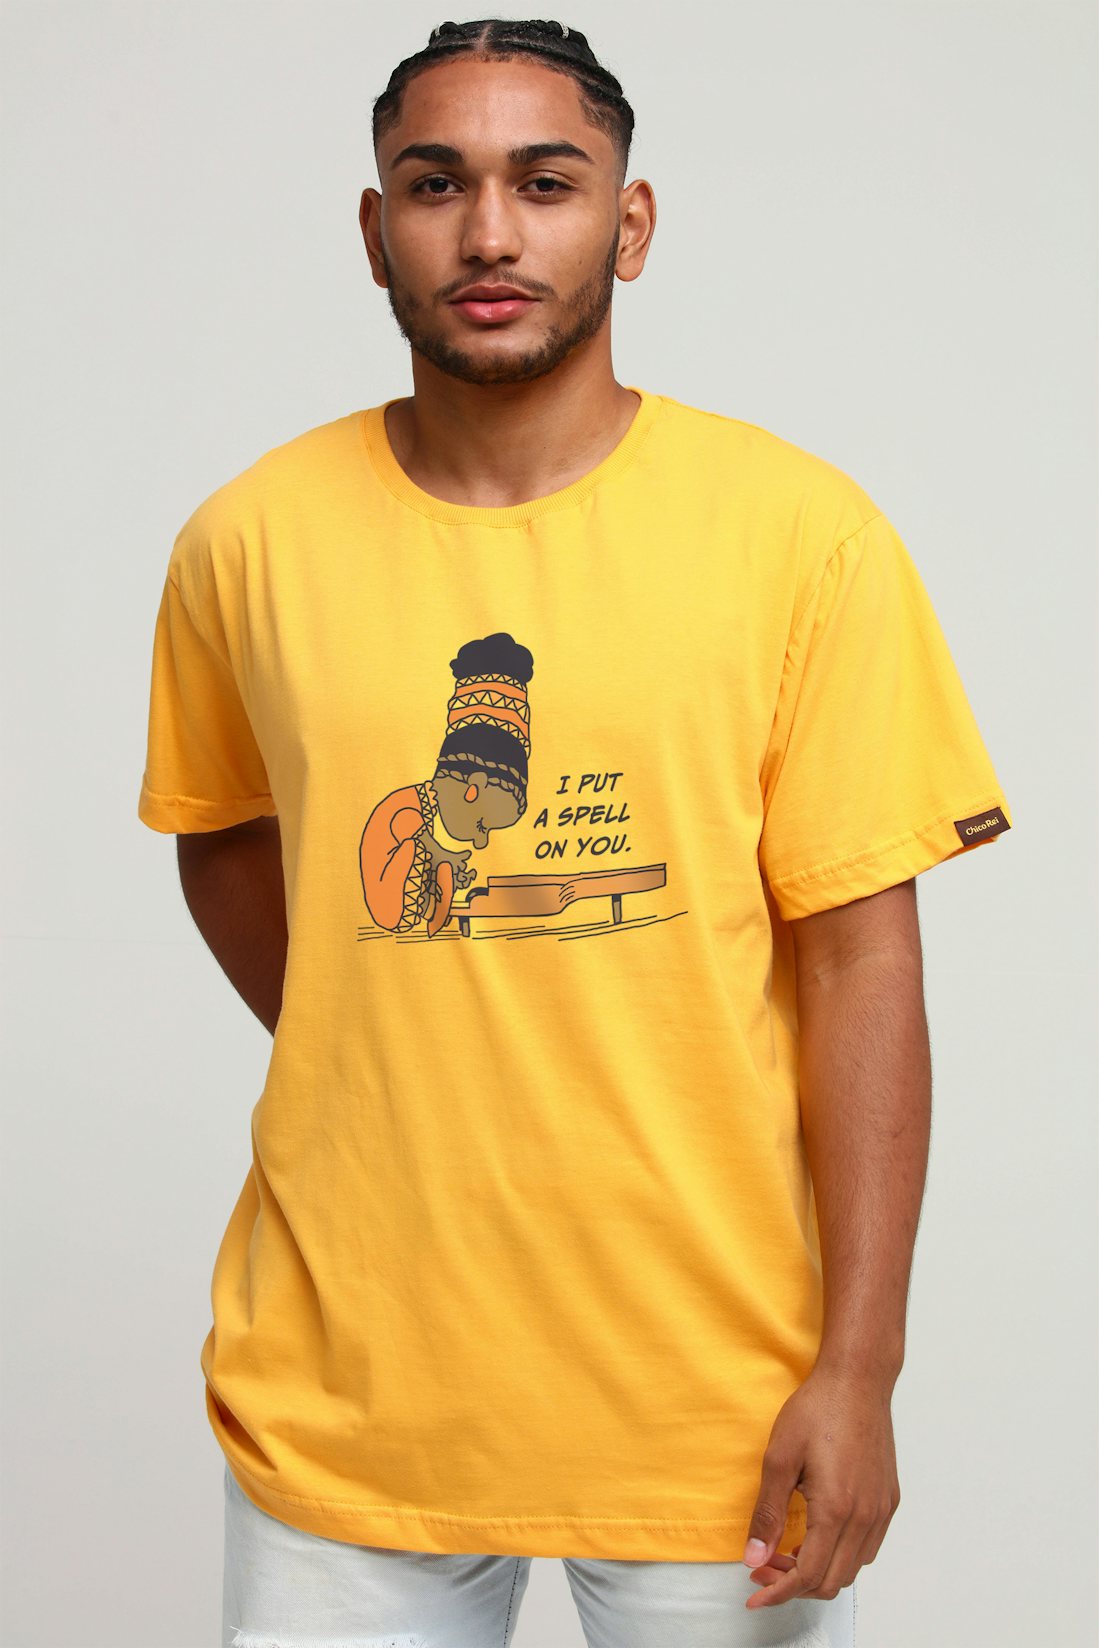 Promo relâmpago: camisetas da Chico Rei estão por R$ 49,90